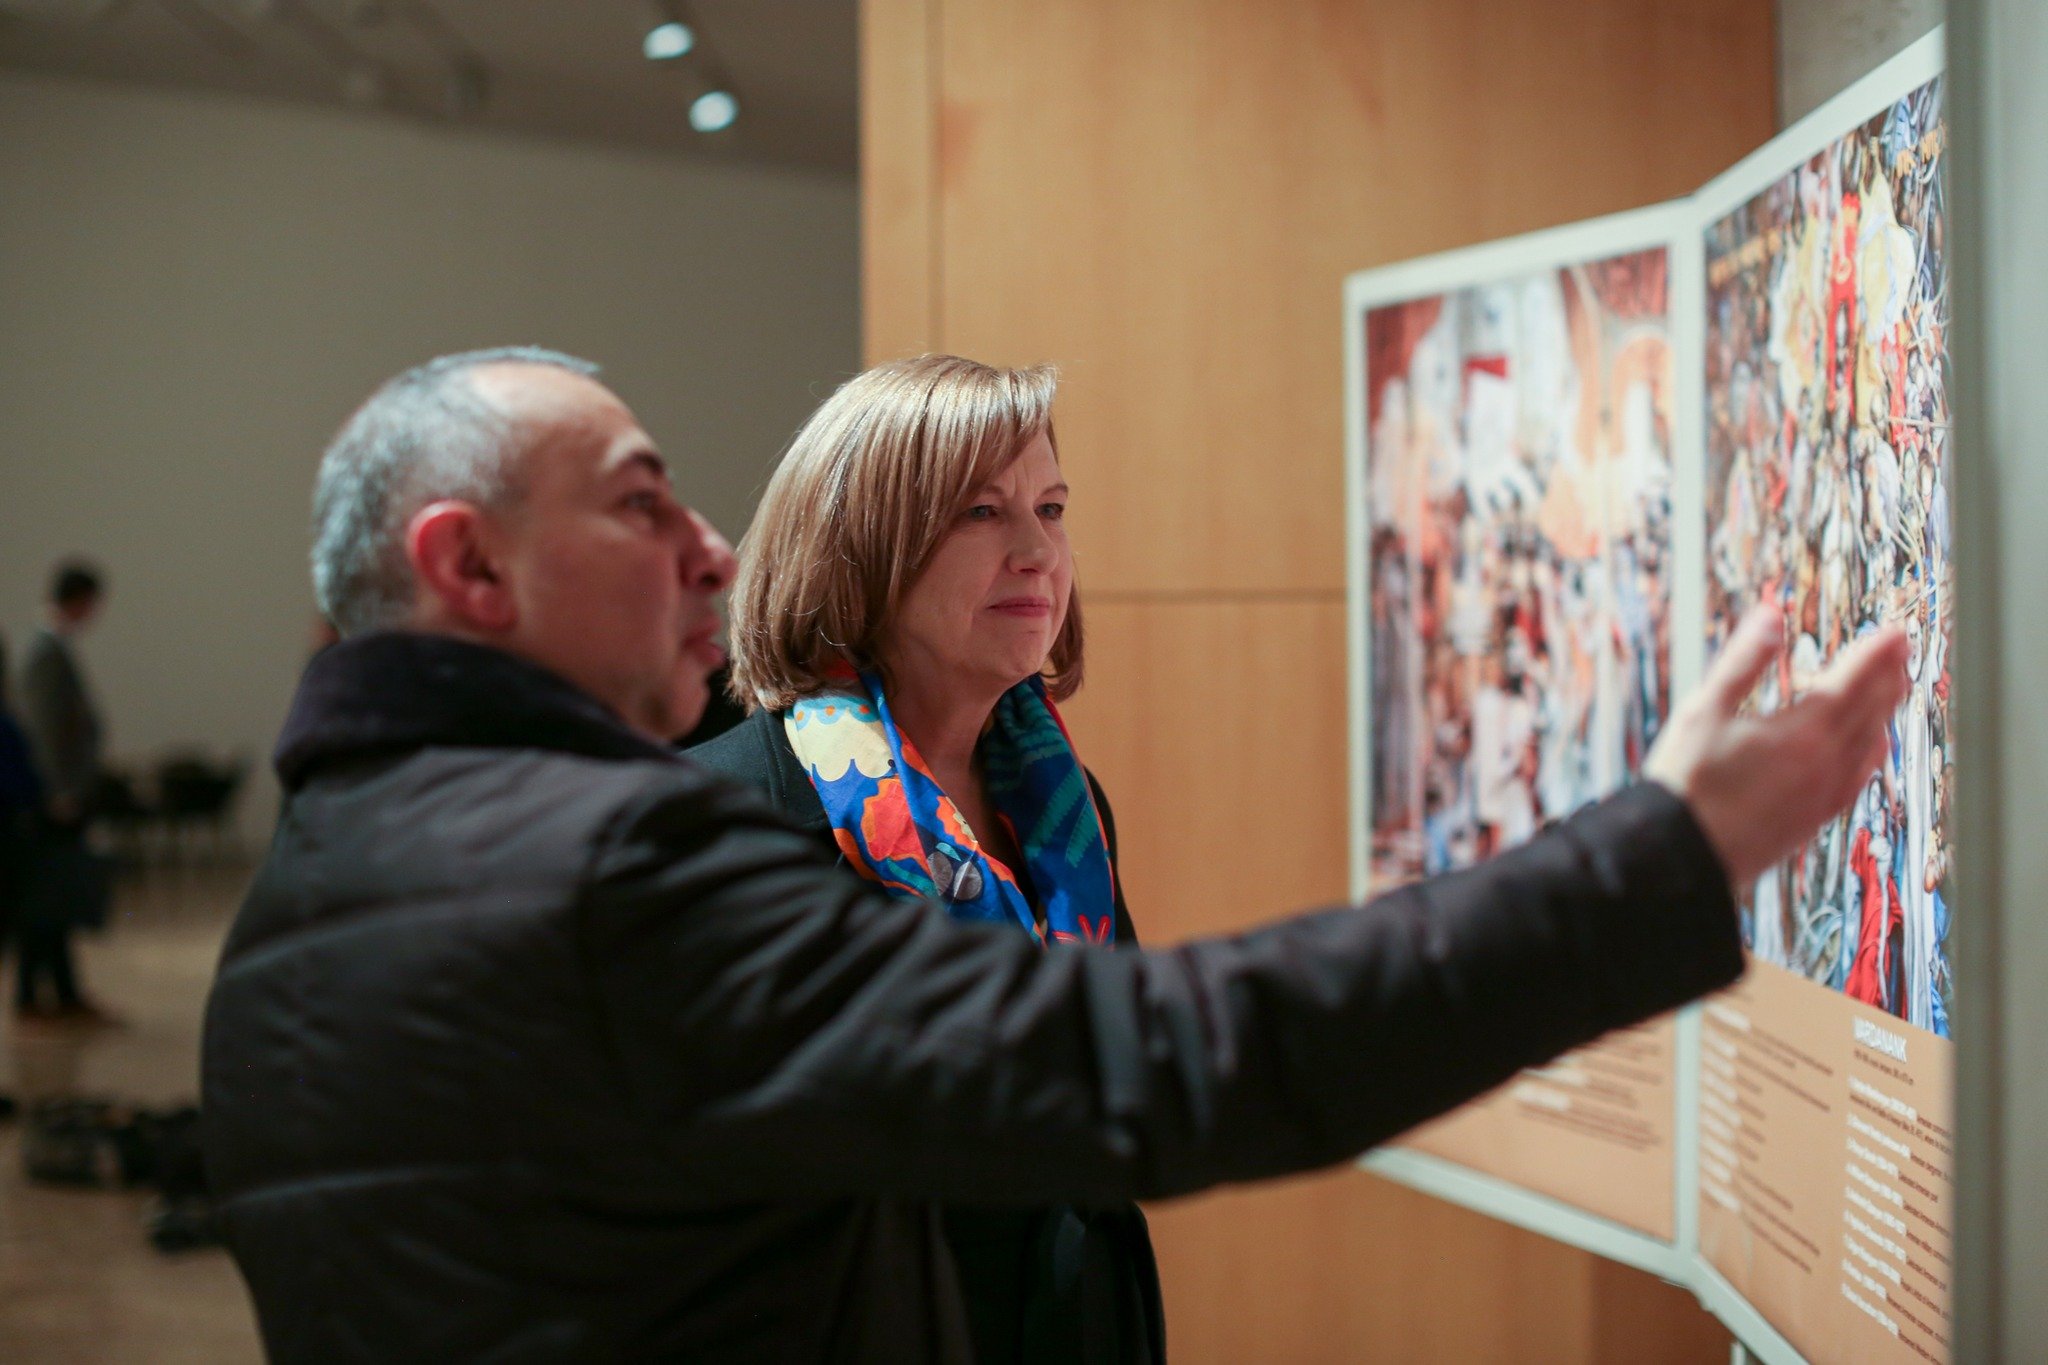 Դեսպան Քվինն այցելել է «Գաֆէսճեան արվեստի կենտրոն»՝ ծանոթանալու հայկական և ժամանակակից արվեստի լավագույն նմուշներին․ լուսանկարներ